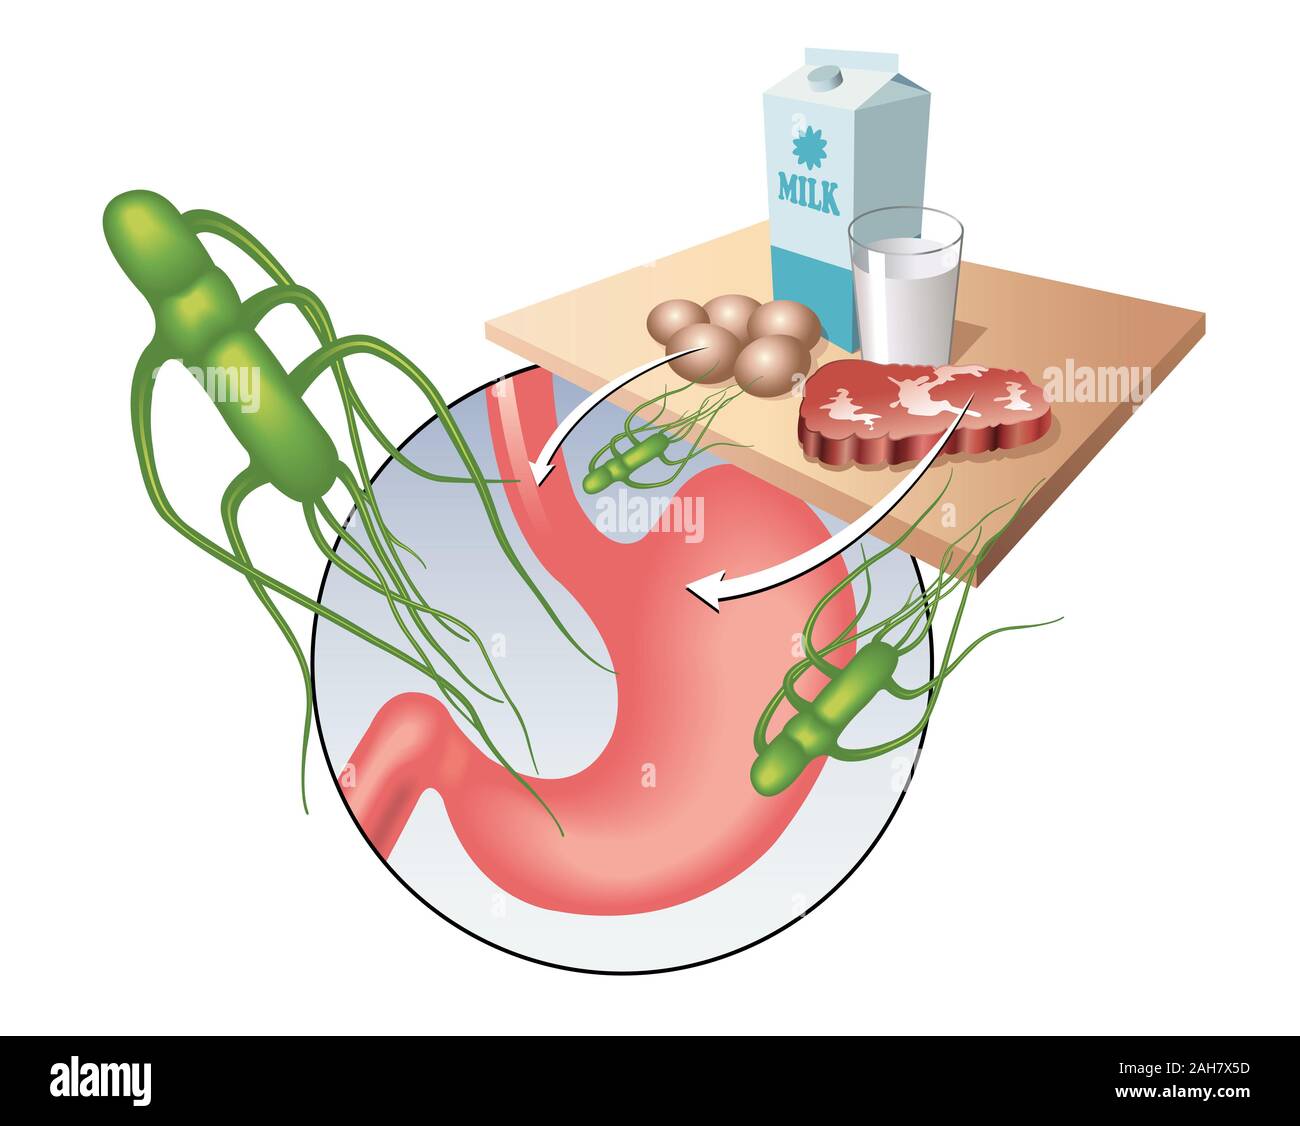 Medical illustrazione che mostra il virus di salmonella e i principali alimenti contaminati. Foto Stock